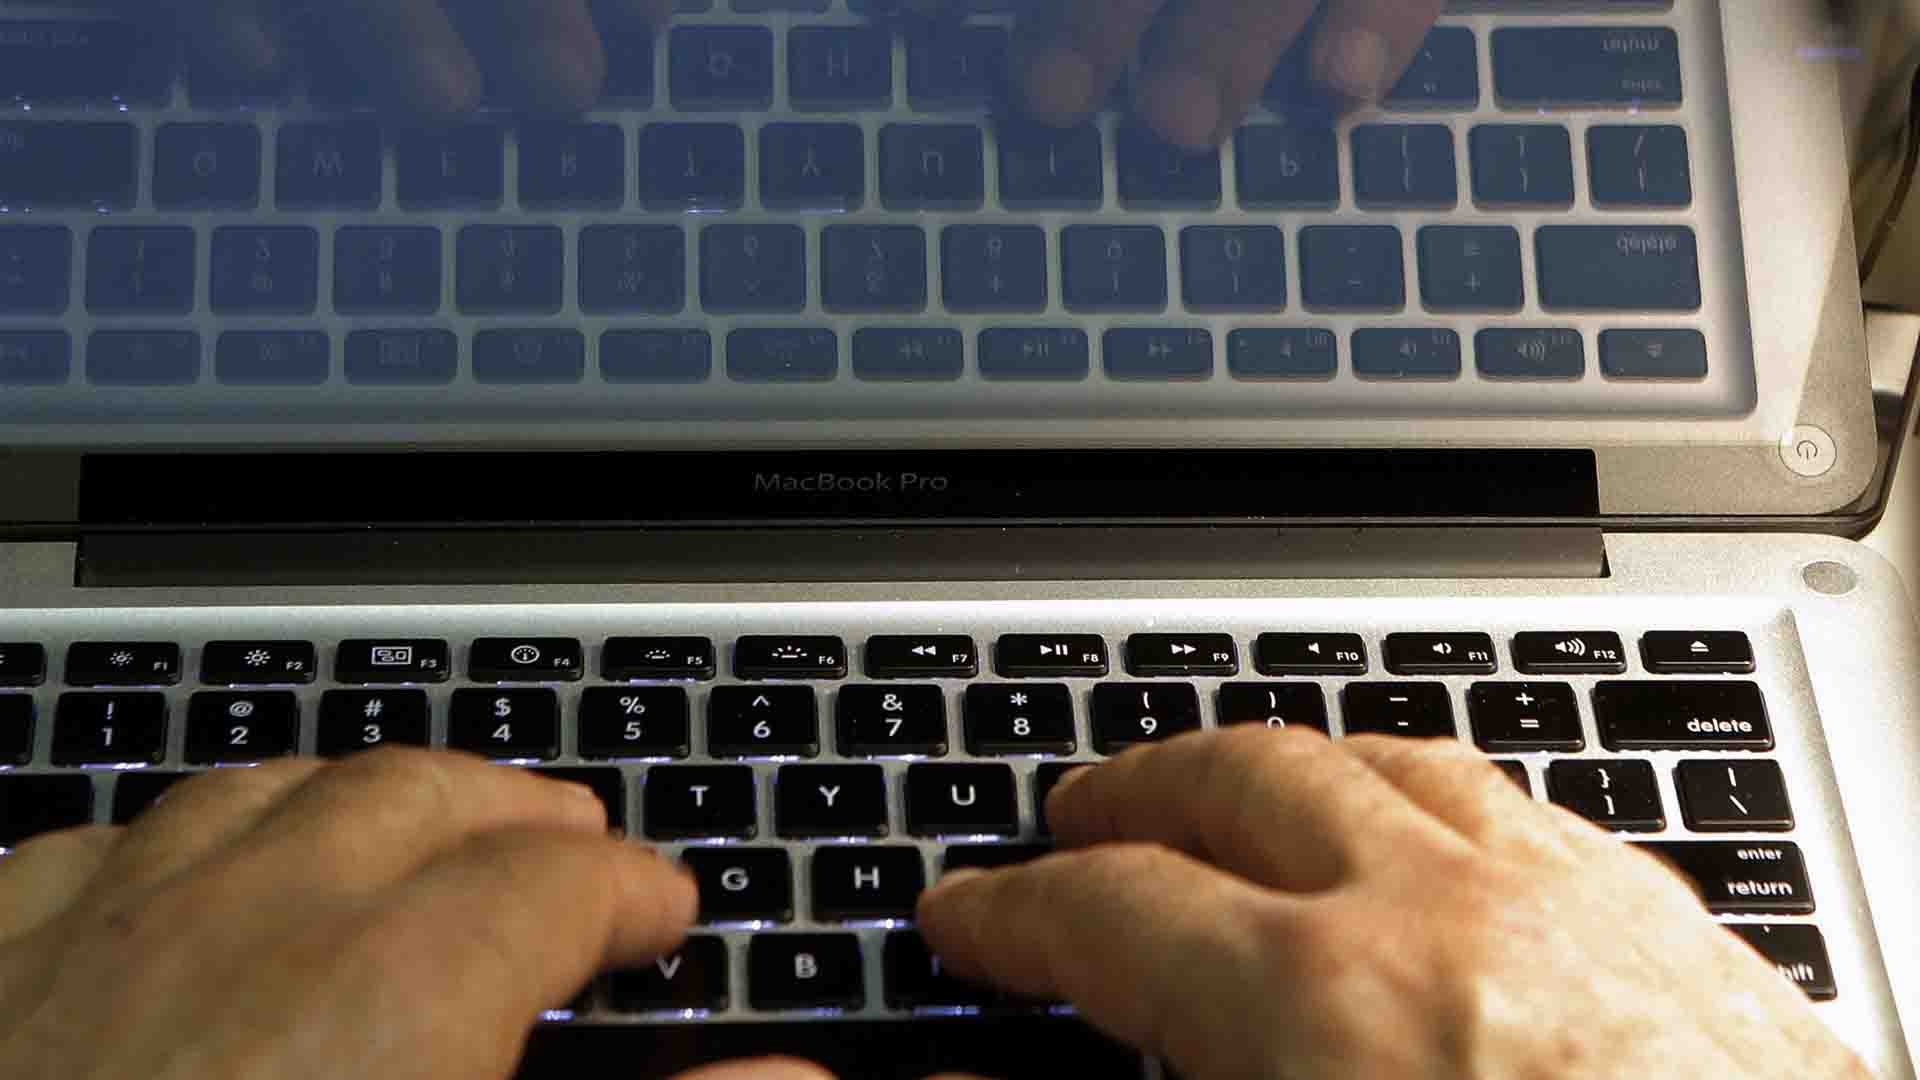 La Guardia Civil desmantela las principales estructuras de piratería en internet